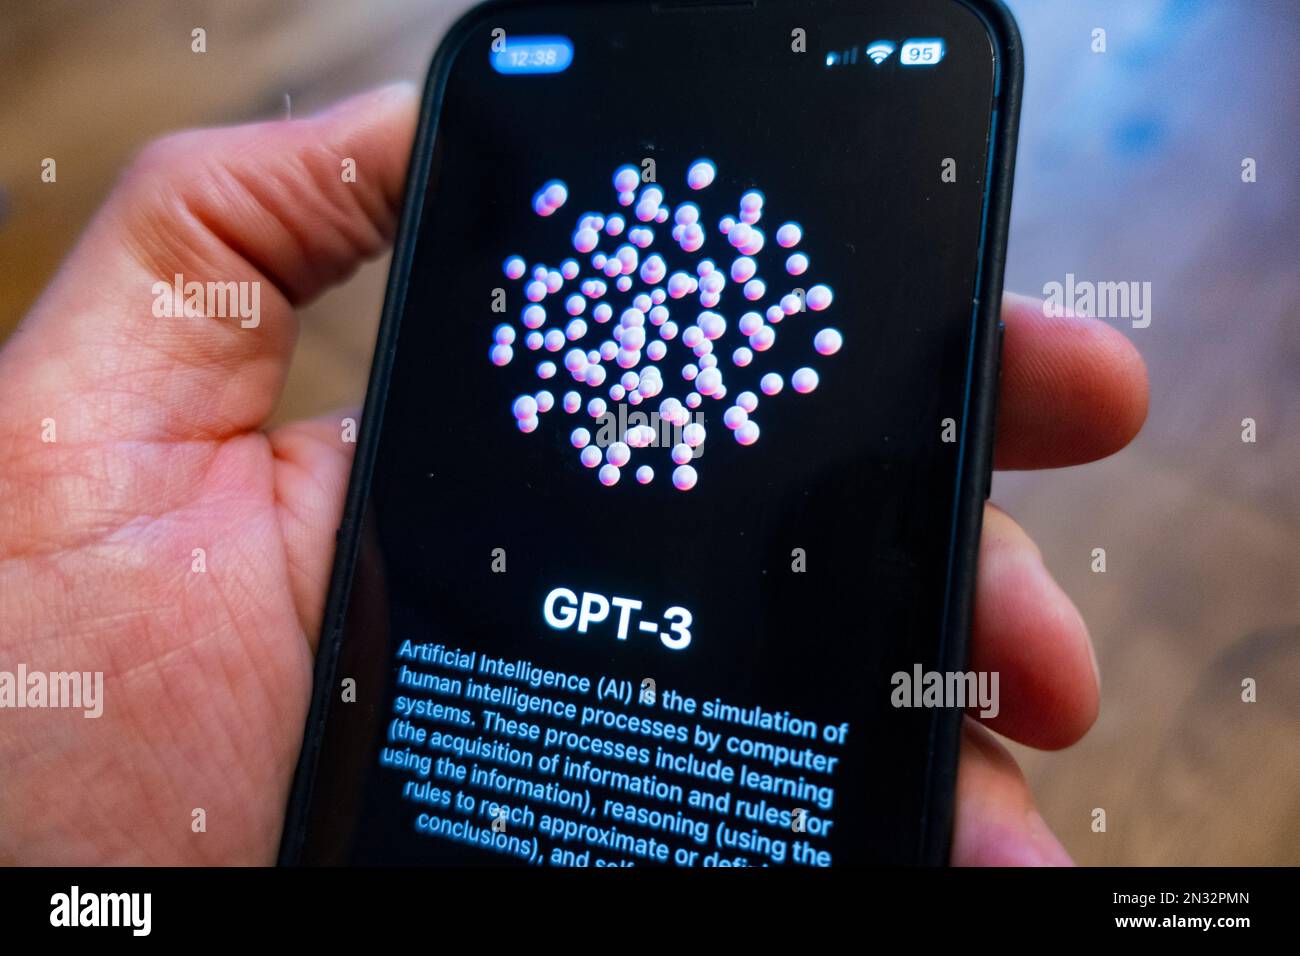 Das GPT-3-Logo des künstlichen Intelligenz-Systems wird auf dem Bildschirm des Mobiltelefons angezeigt Stockfoto